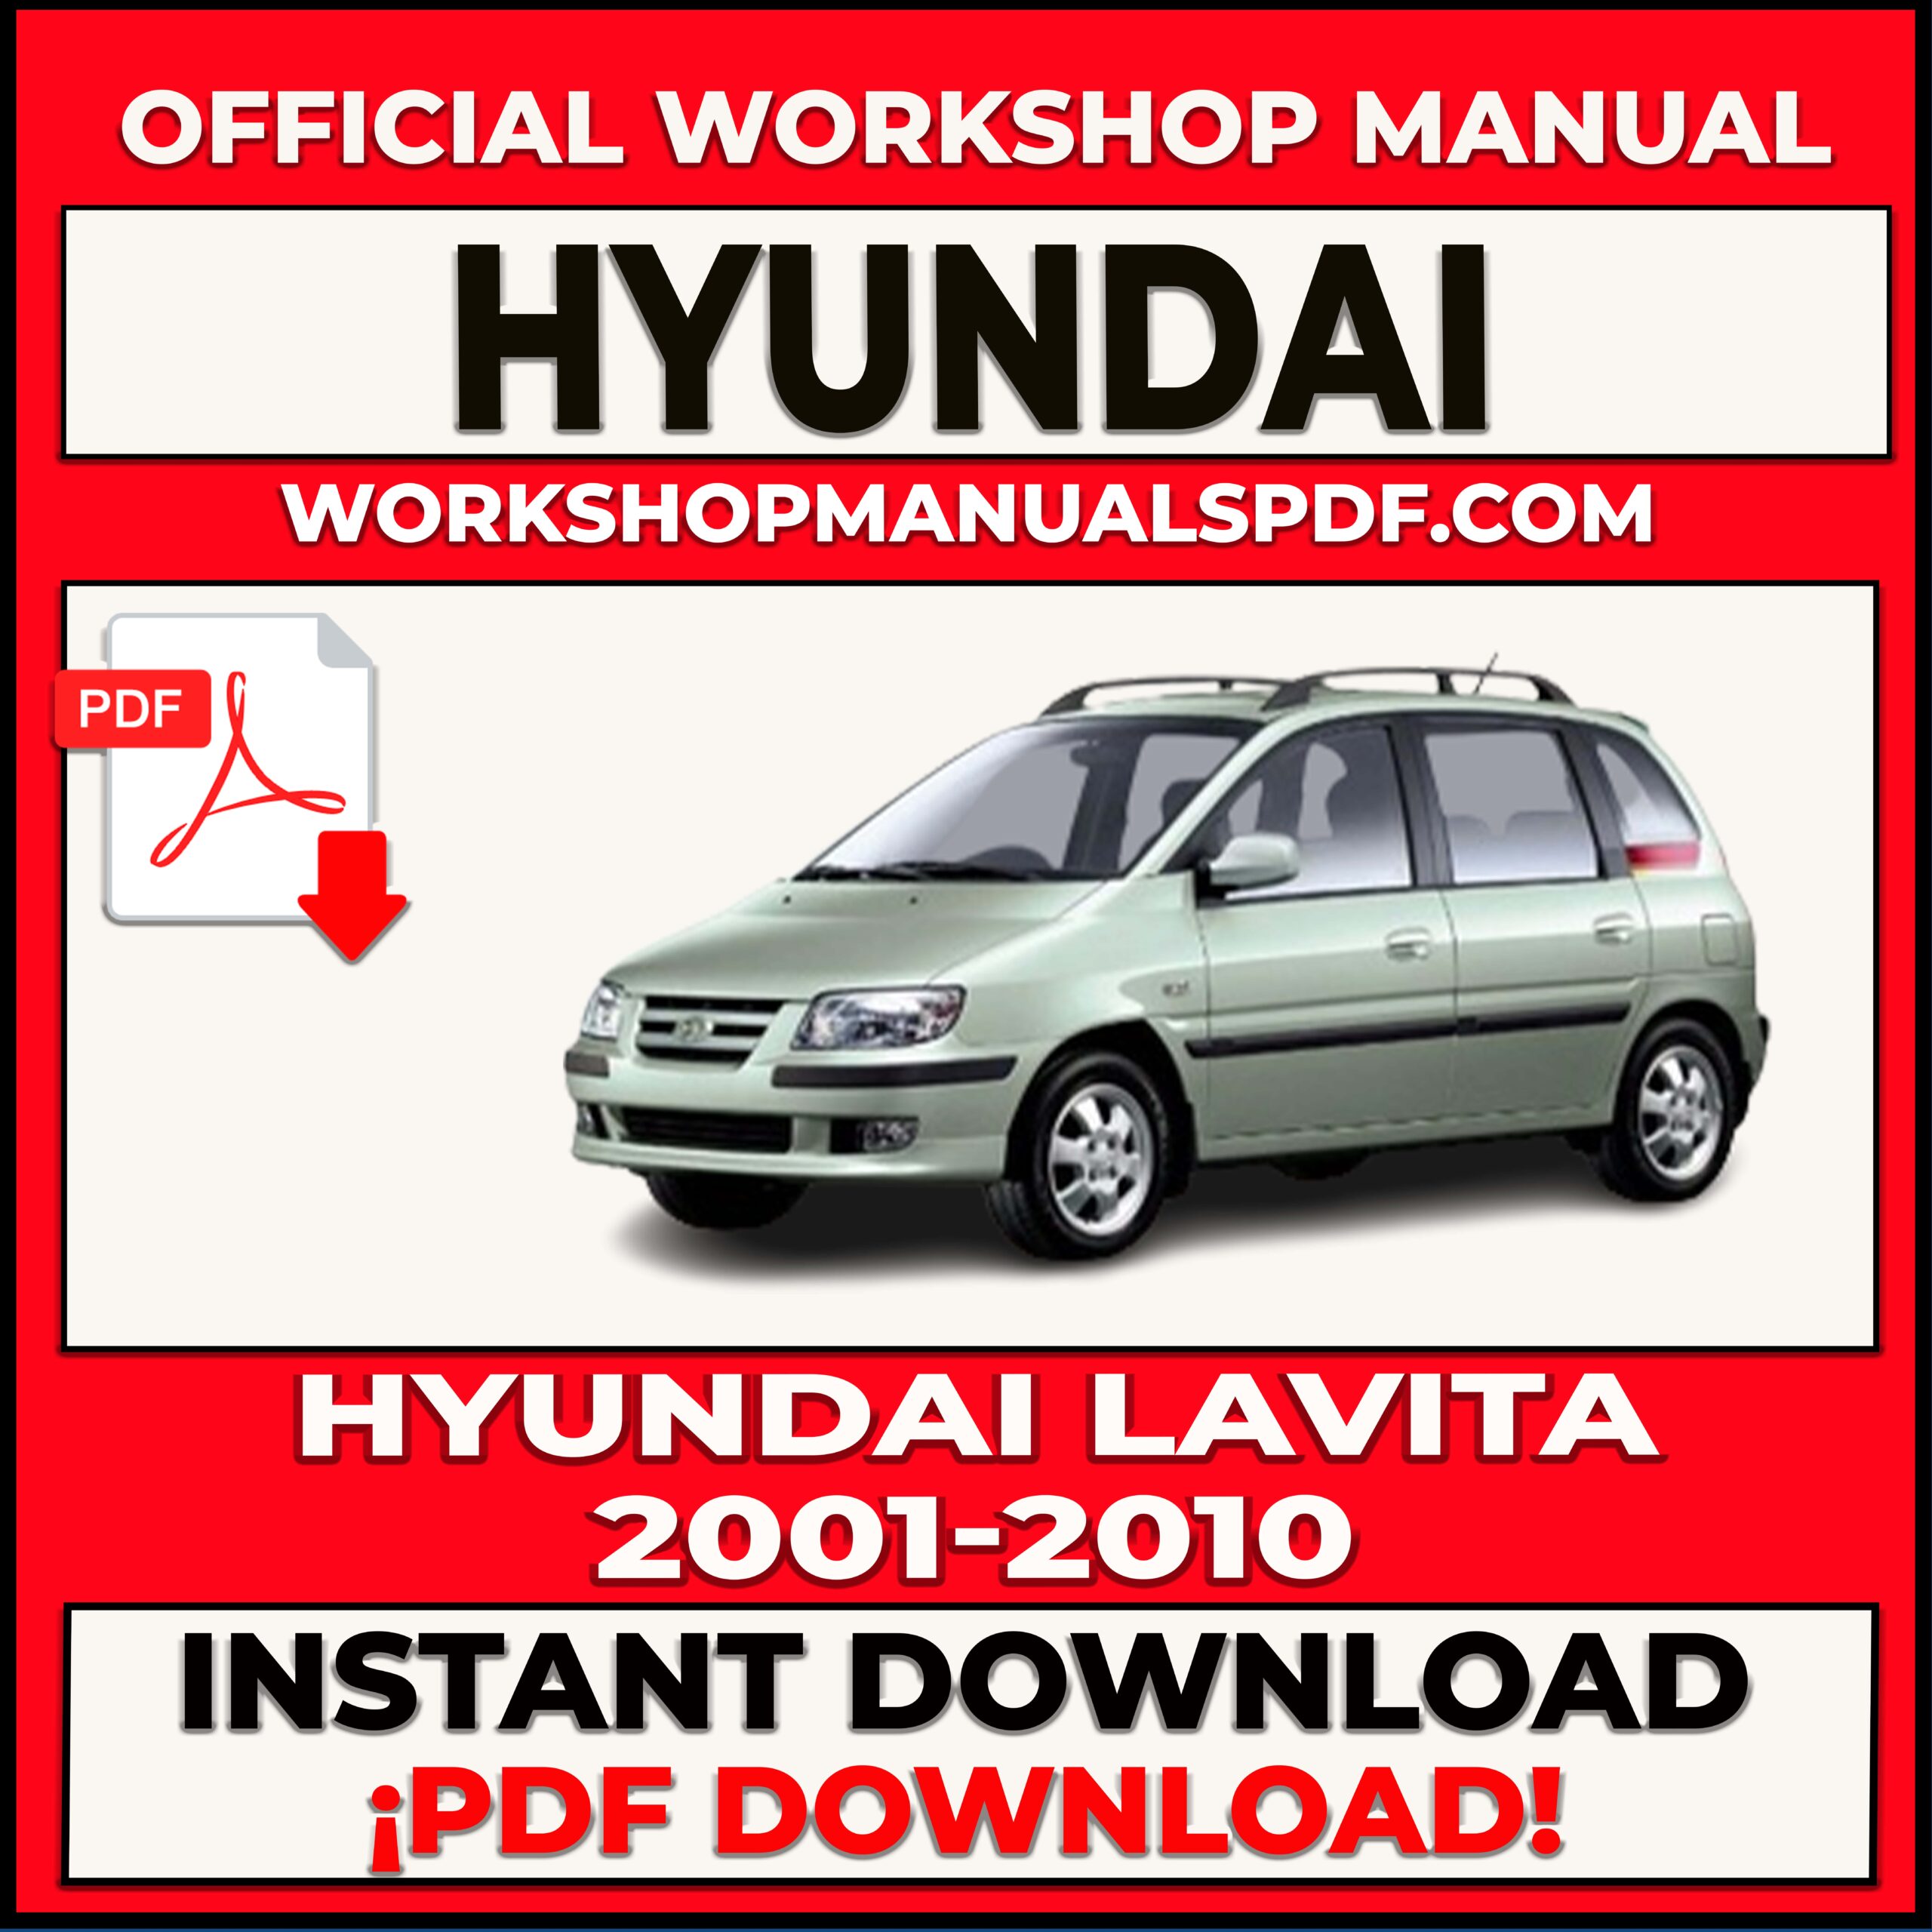 Hyundai Lavita (2001-2010) Workshop Repair Manual